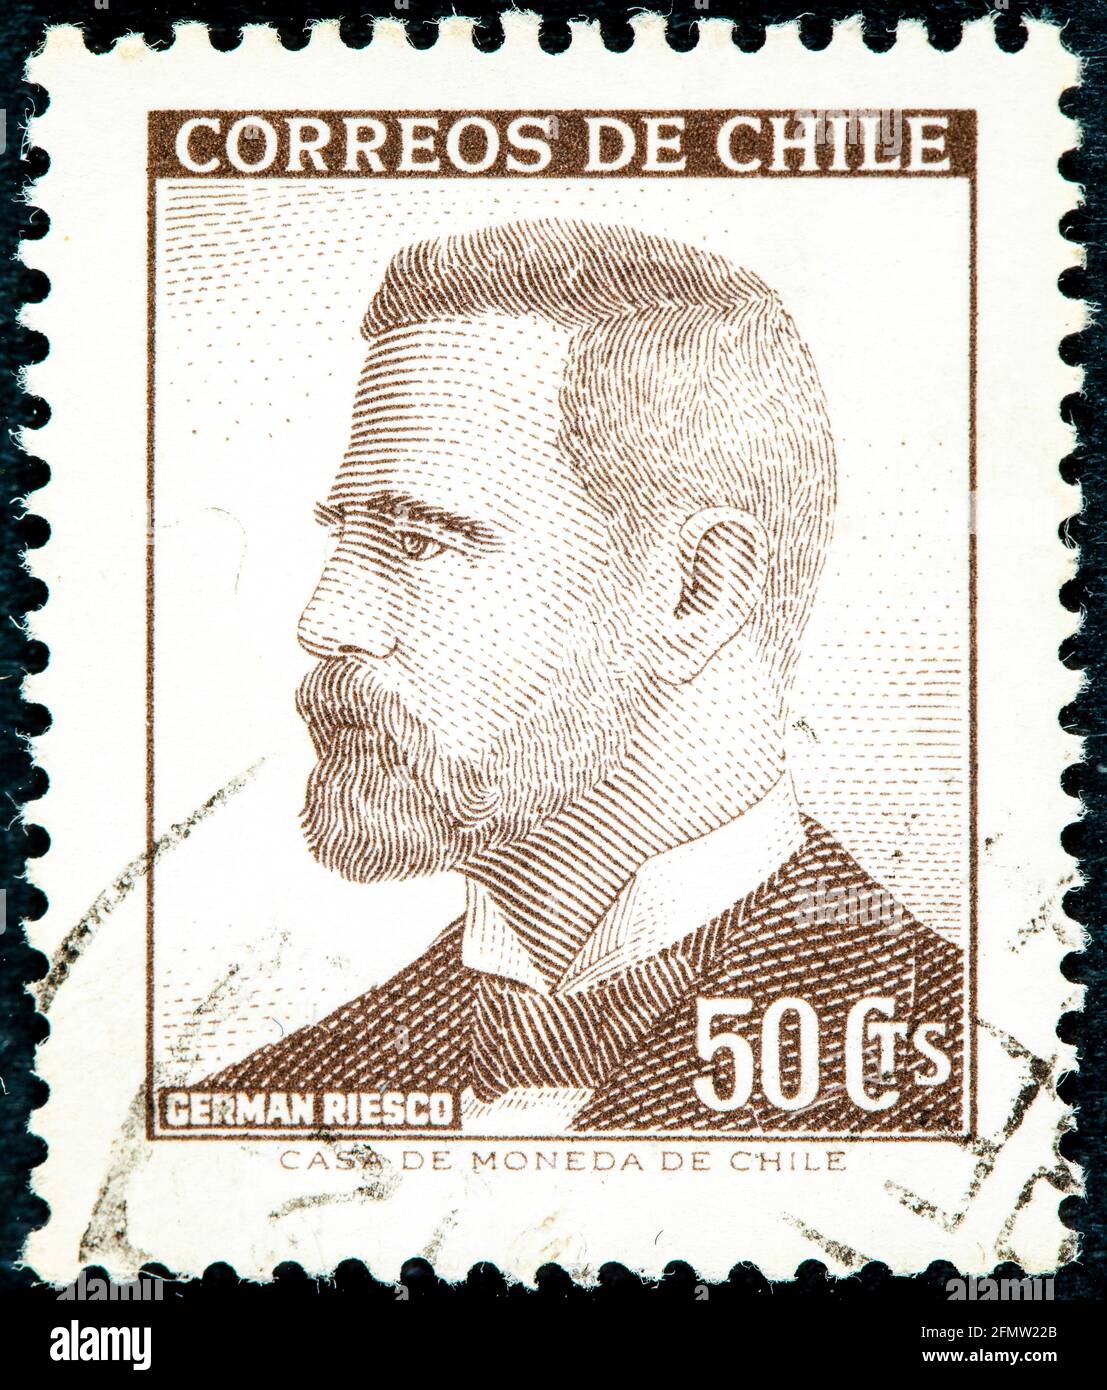 CHILI - VERS 1966: Un timbre imprimé au Chili montre Riesco allemand, 5e président du Chili, 1901 - 1906, vers 1966 Banque D'Images